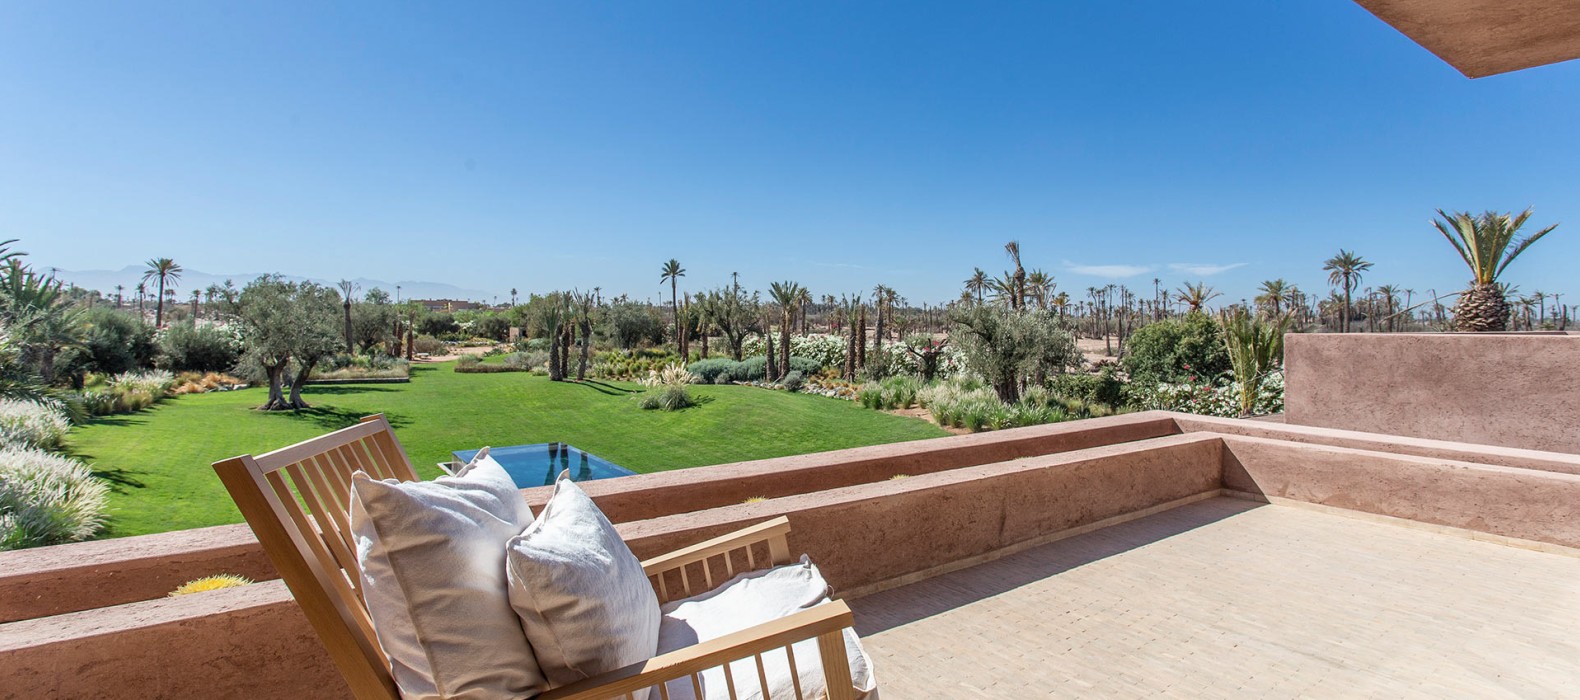 Balcon view of Villa Arabesque in Marrakech